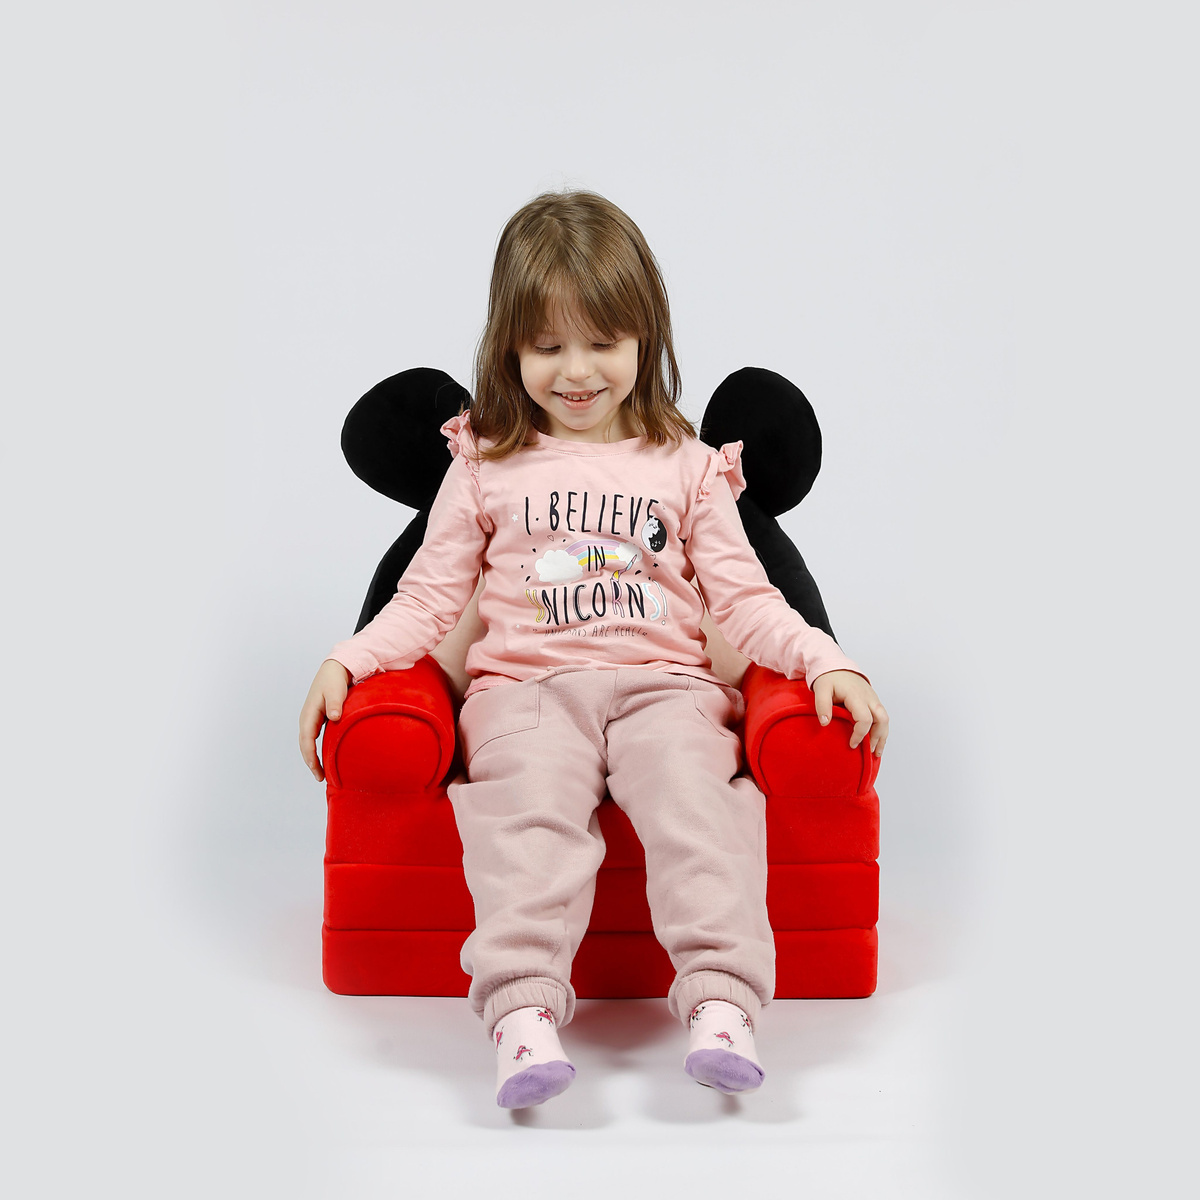 Раскладное кресло для детей не имеет острых углов, изготовлен из гипоаллергенных материалов.